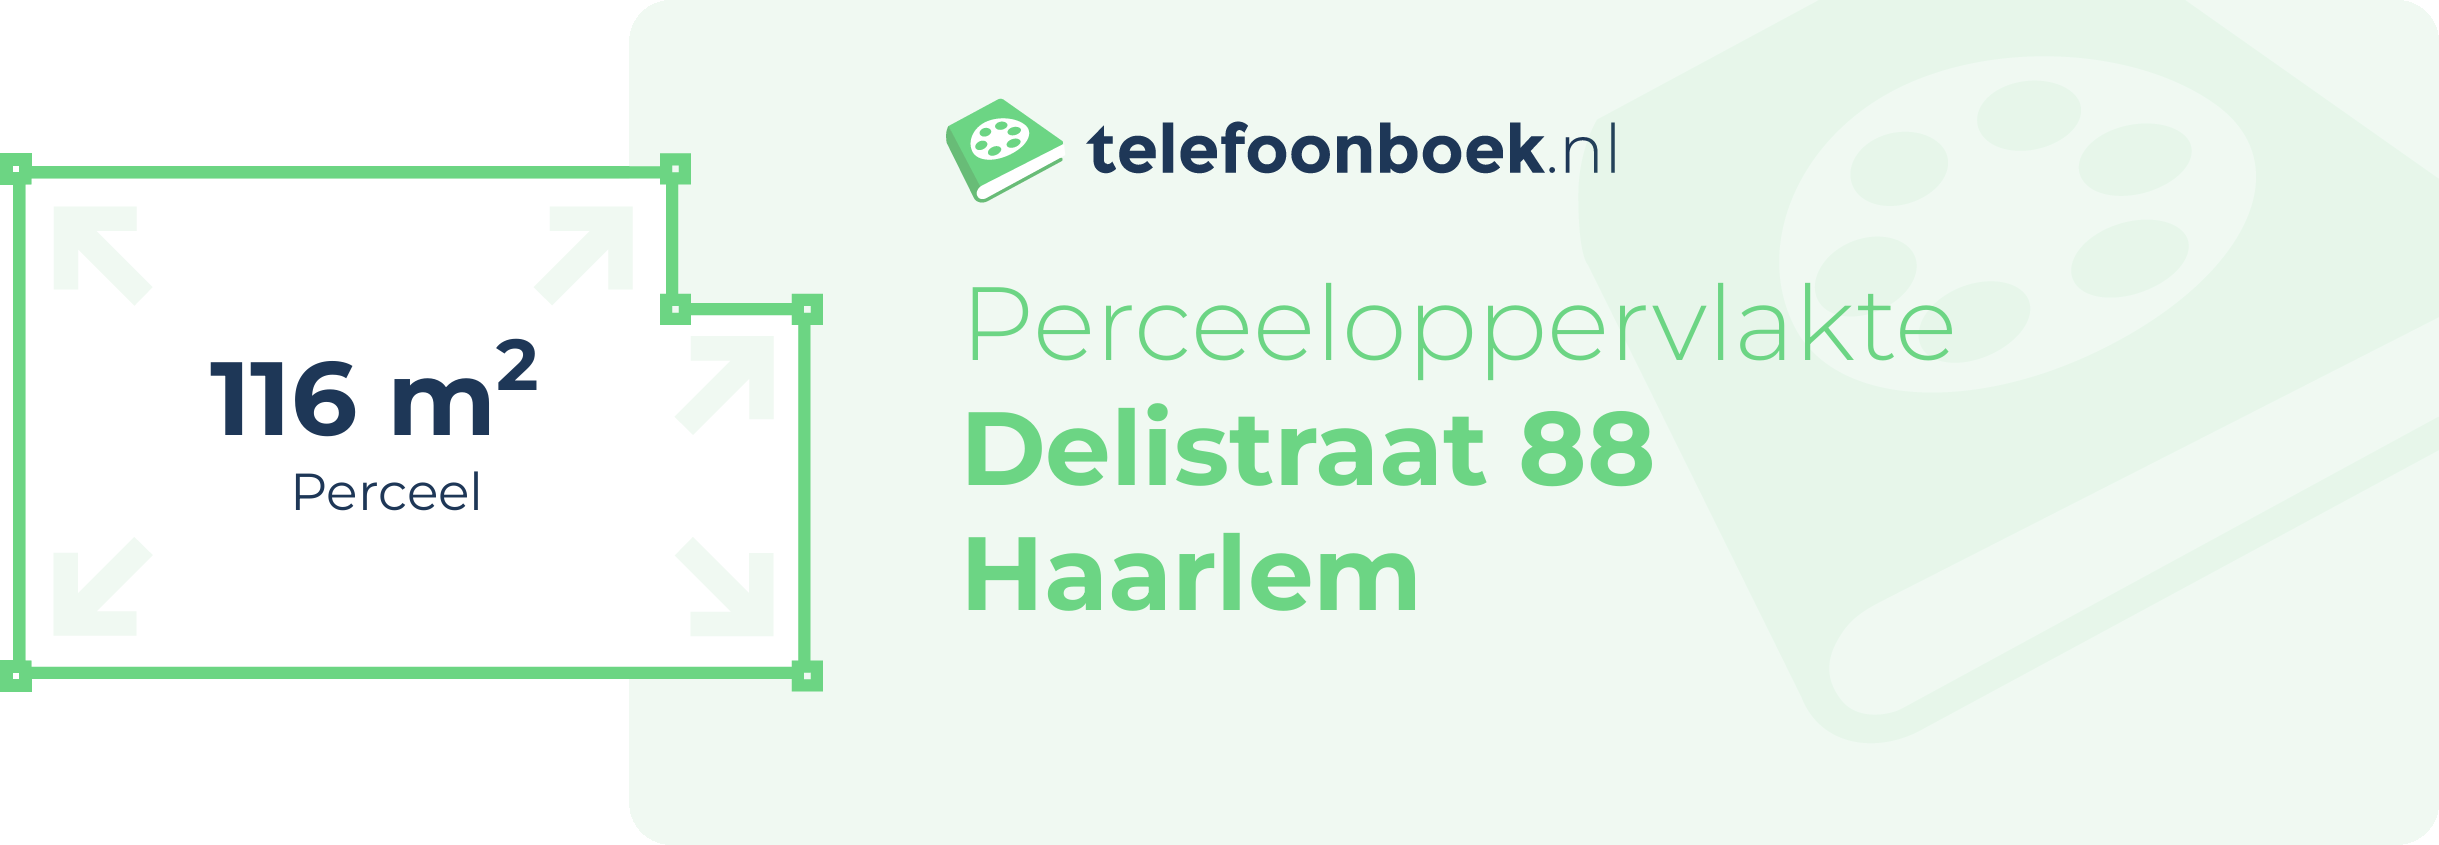 Perceeloppervlakte Delistraat 88 Haarlem